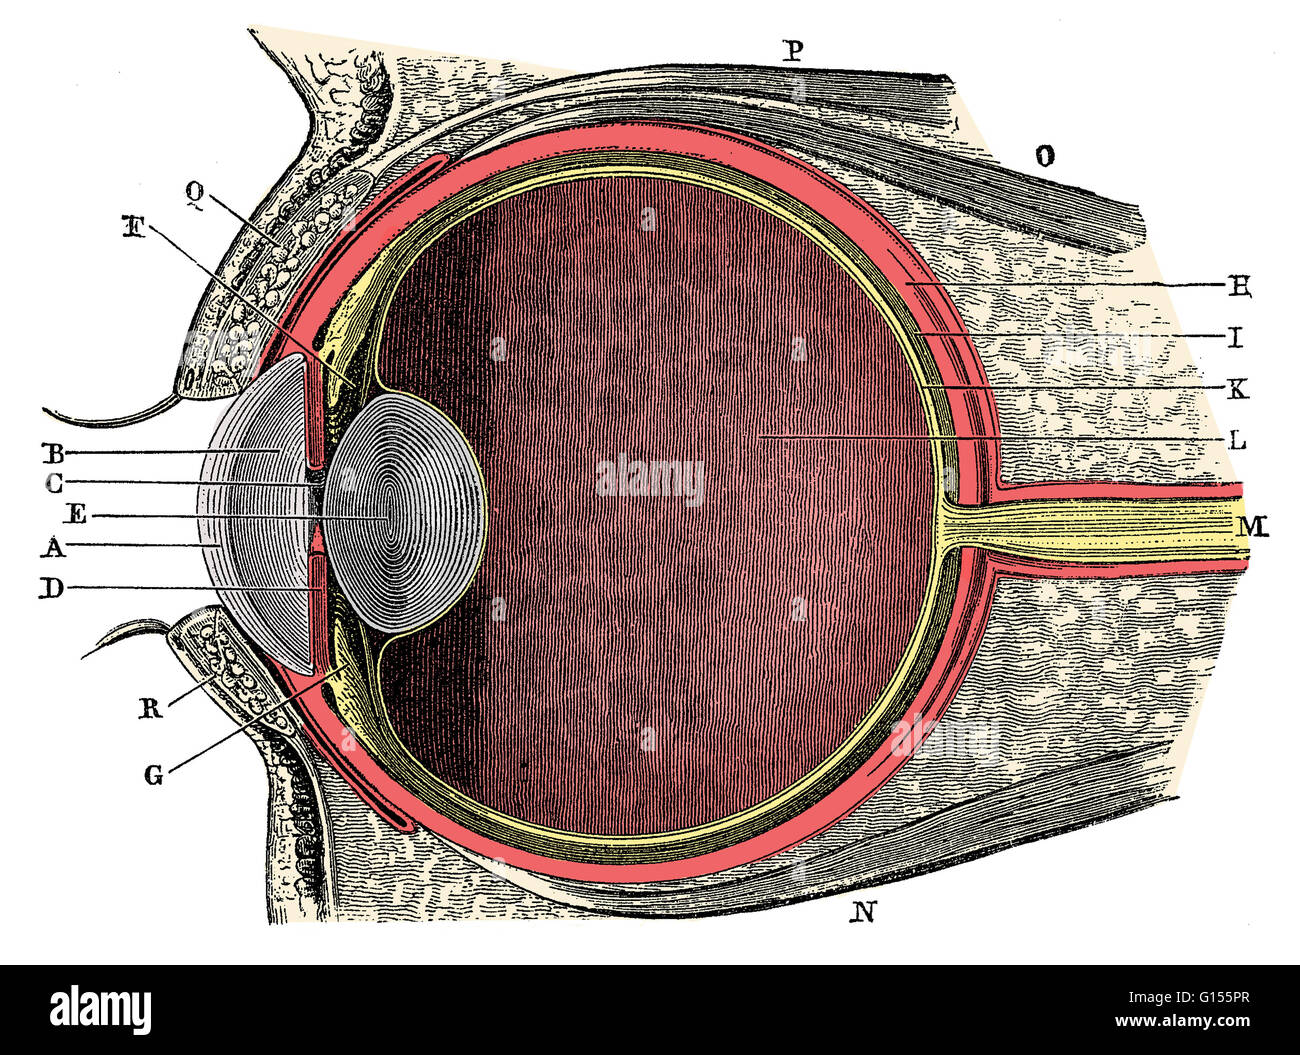 Anatomie des menschlichen Auges. Hornhaut (A), wässrige humor (B), Iris (C), Schüler (D), Objektiv (E), aufschiebende Ligamentum (F), Ziliarkörper (G), Lederhaut (H), Aderhaut (I), Netzhaut (K), Glaskörper (L), Sehnerv (M). Dies ist eine historische anatomische Illustration aus Stockfoto